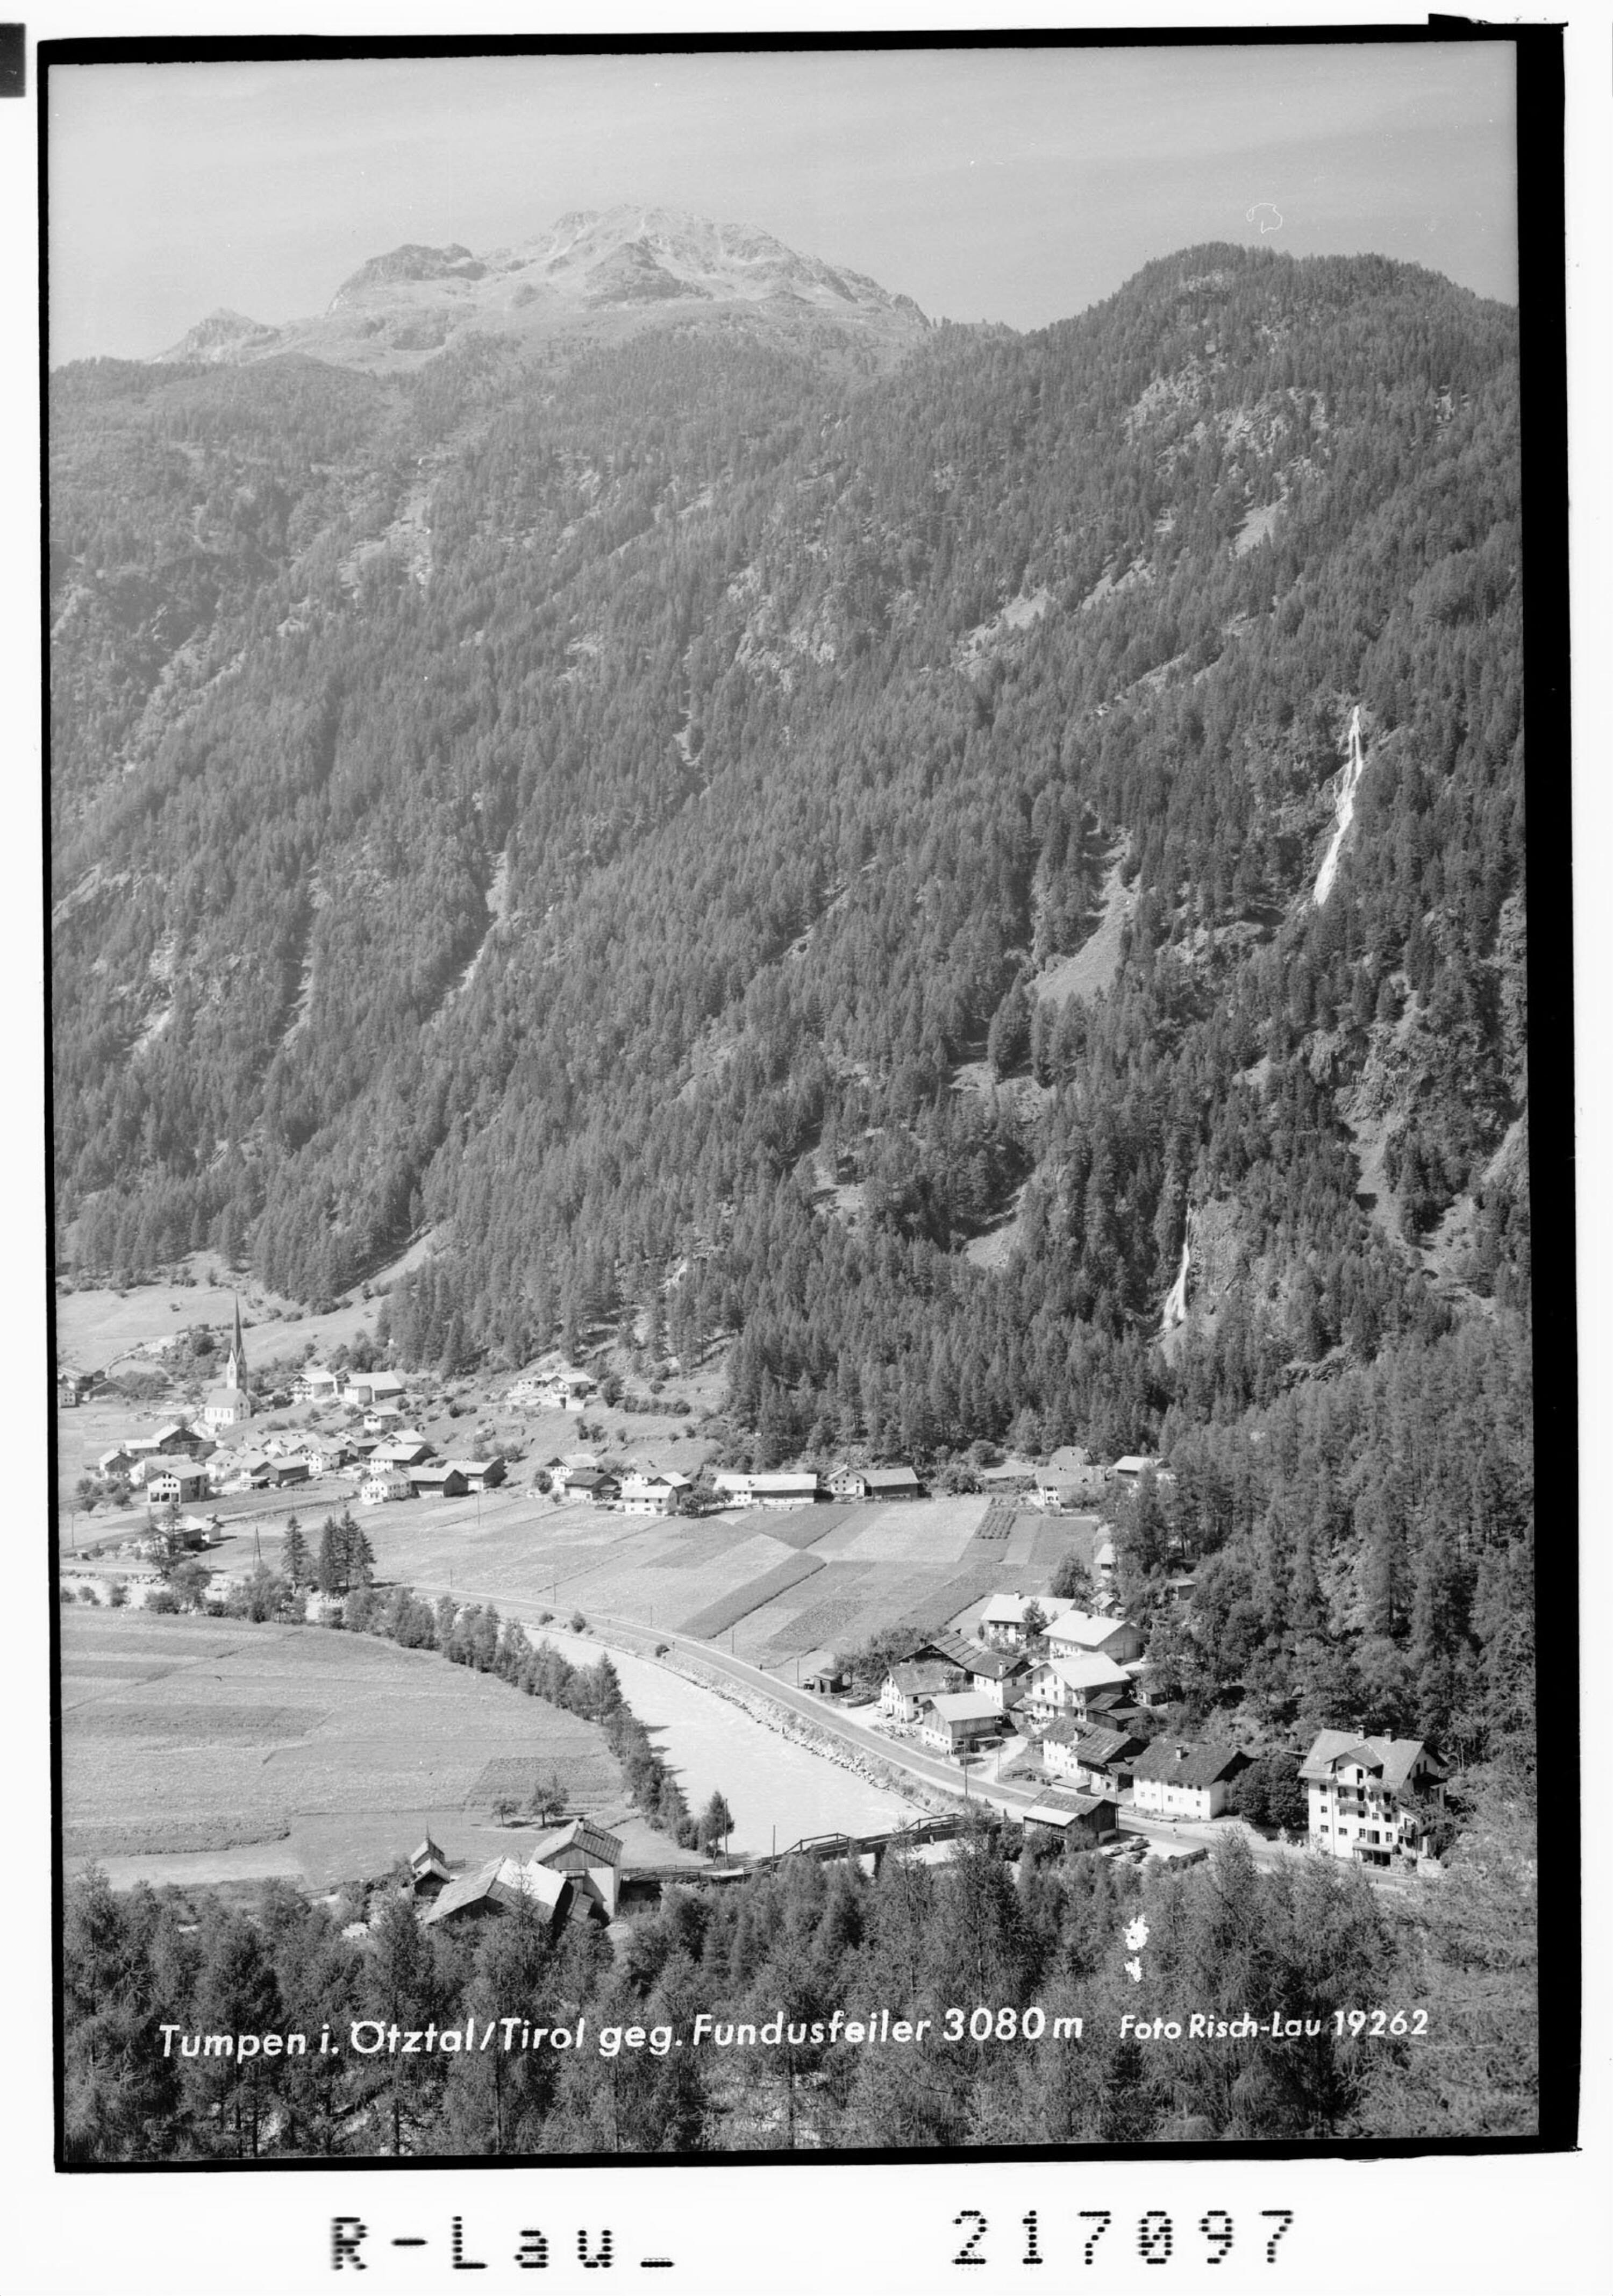 Tumpen im Ötztal / Tirol gegen Fundusfeiler 3080 m></div>


    <hr>
    <div class=